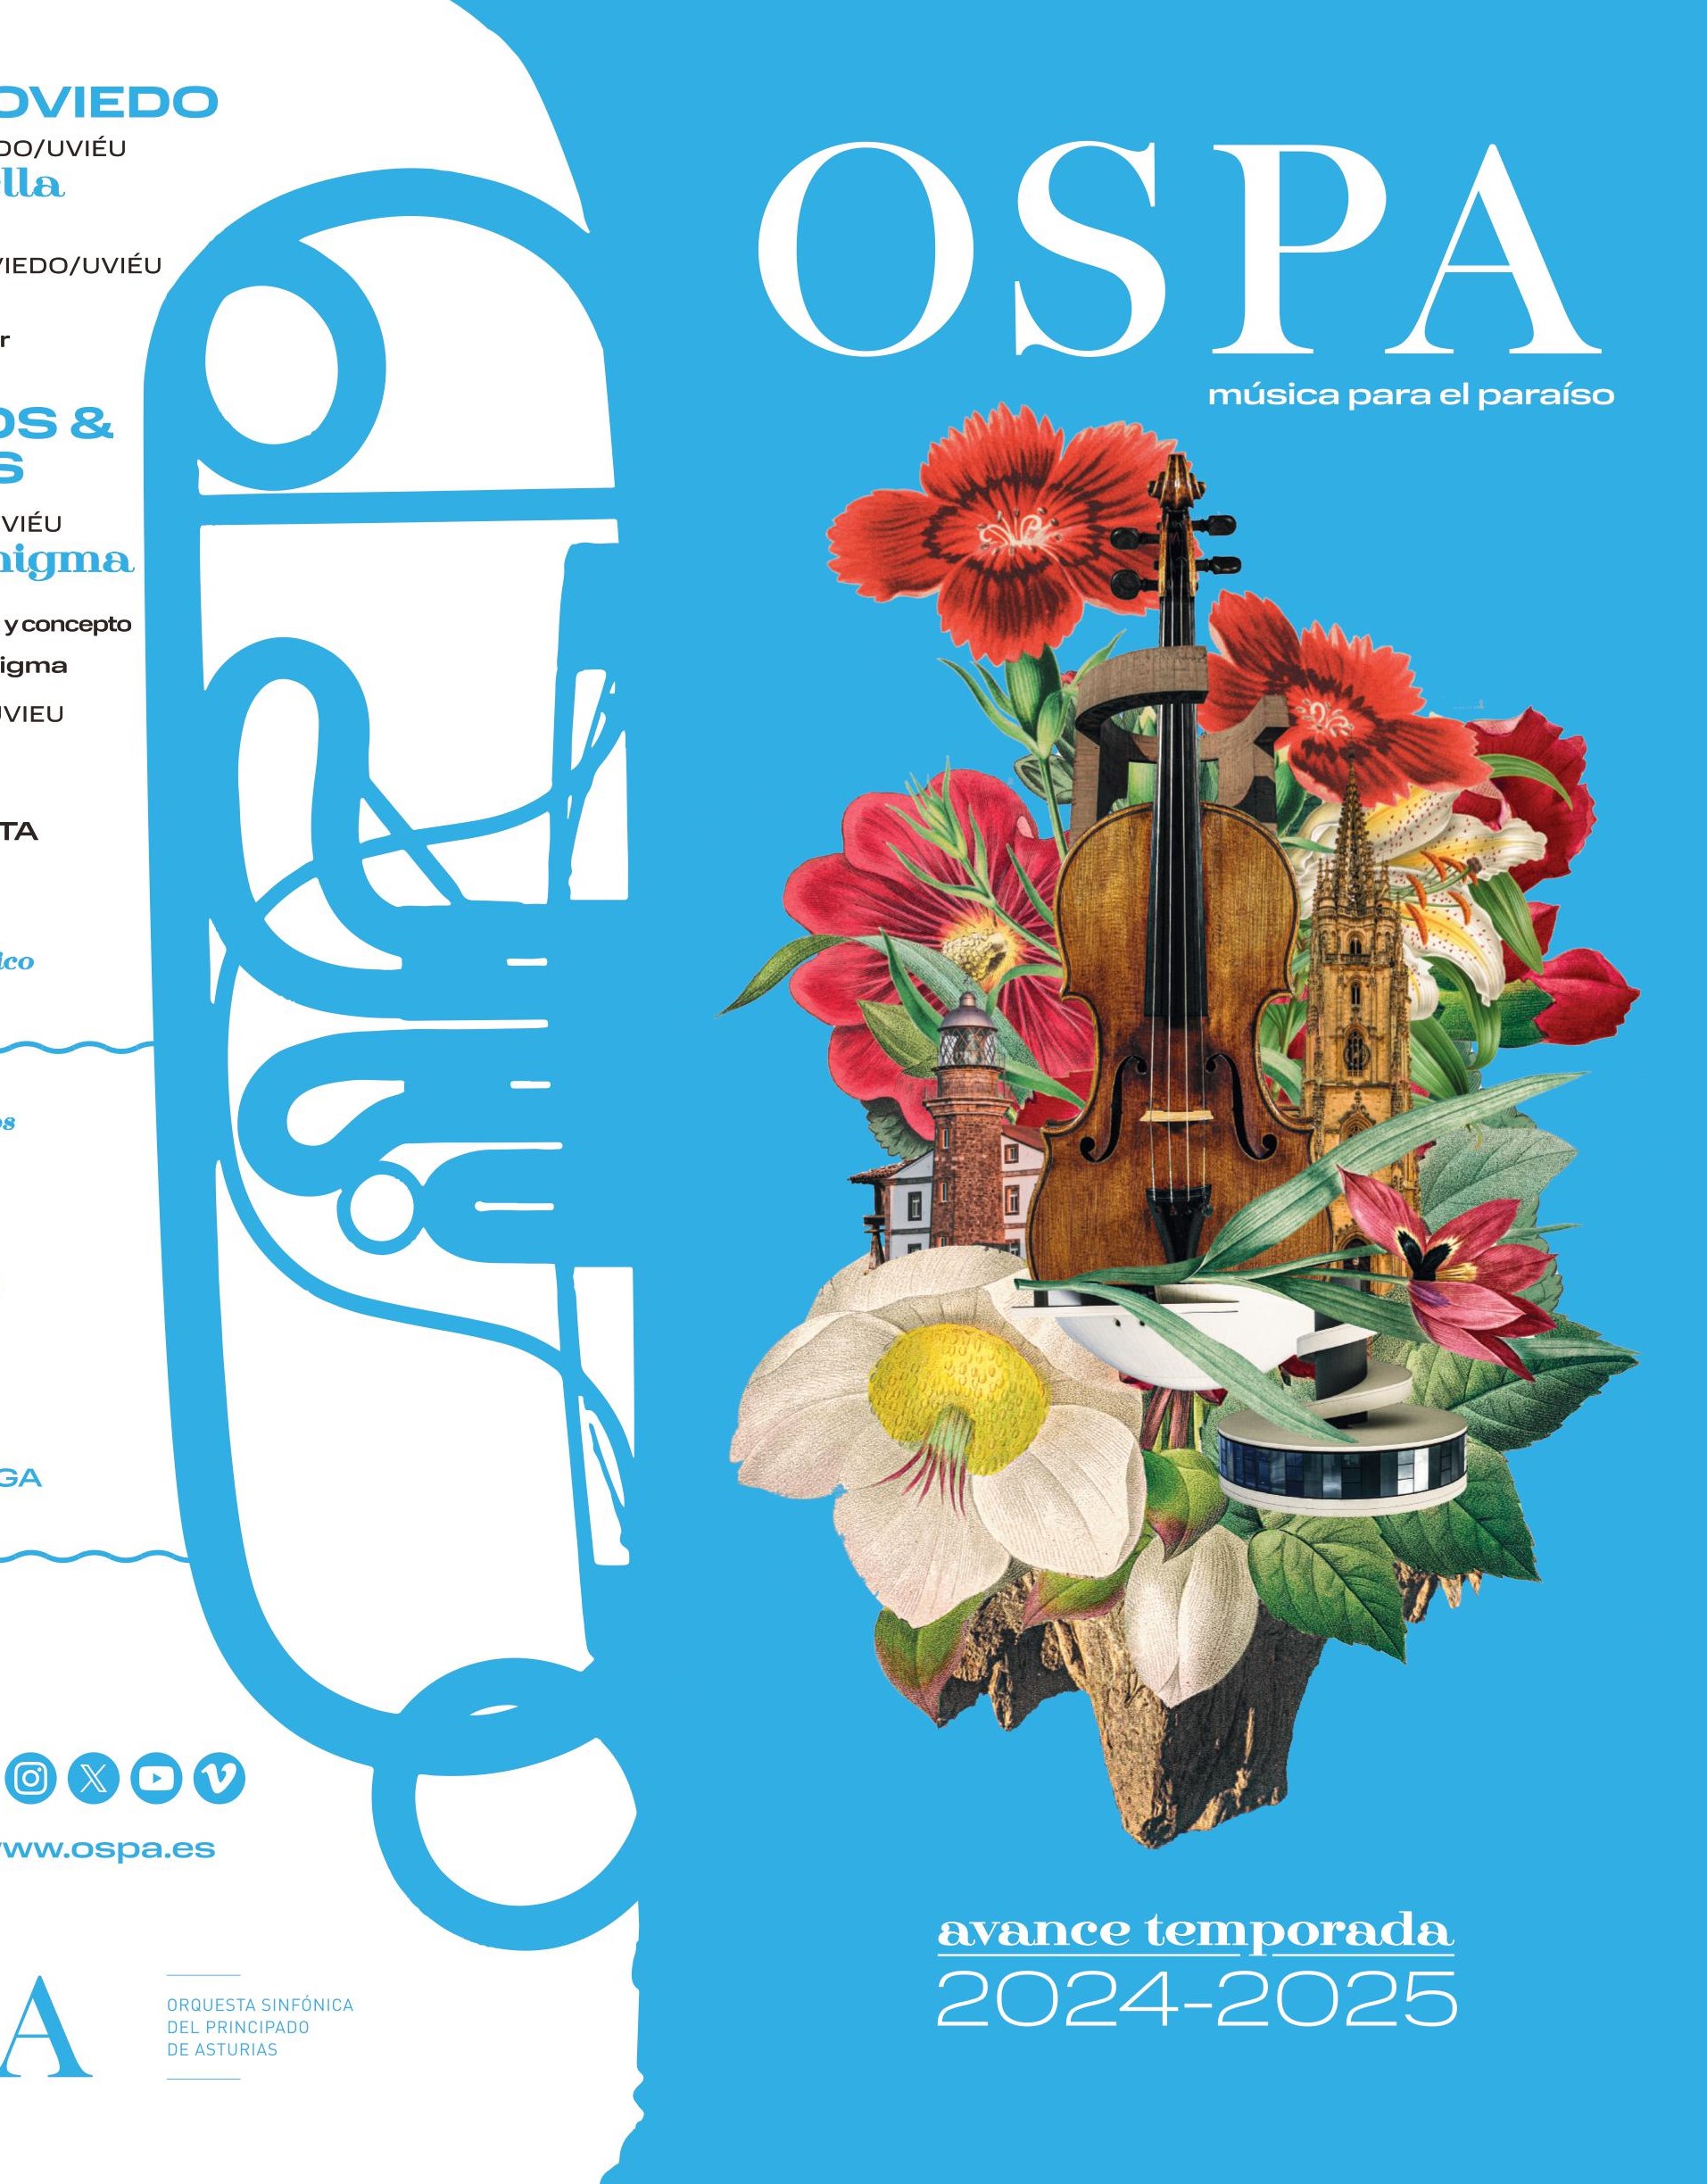 Imagen - La OSPA renueva su programación artística con proyectos educativos, participativos y de apoyo a los jóvenes talentos